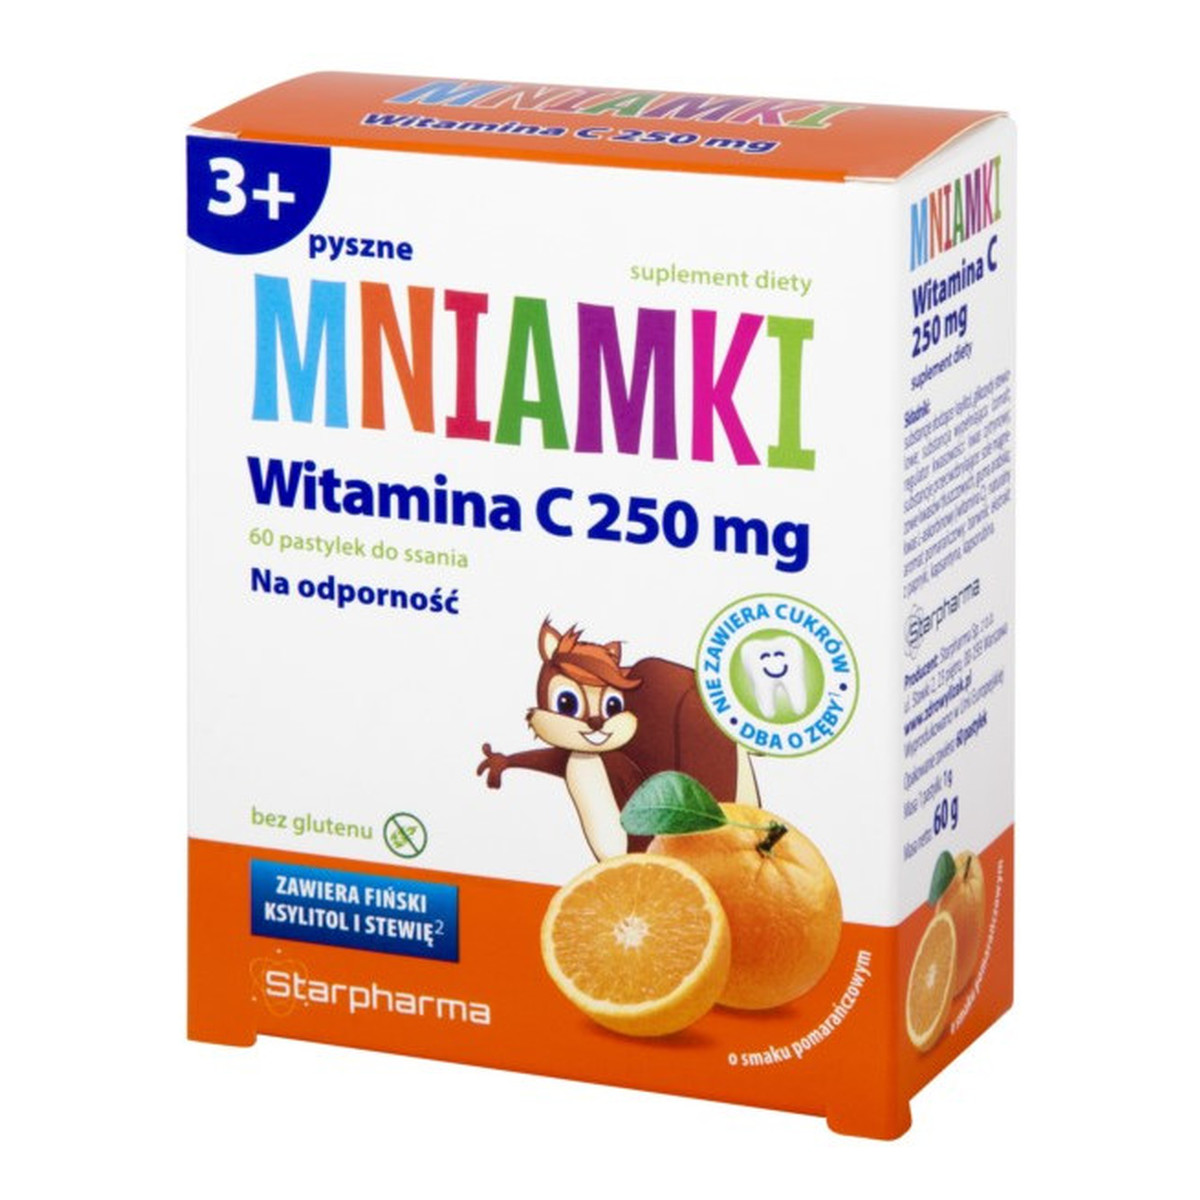 Starpharma Mniamki Witamina C suplement diety dla dzieci 60 pastylek do ssania 250g